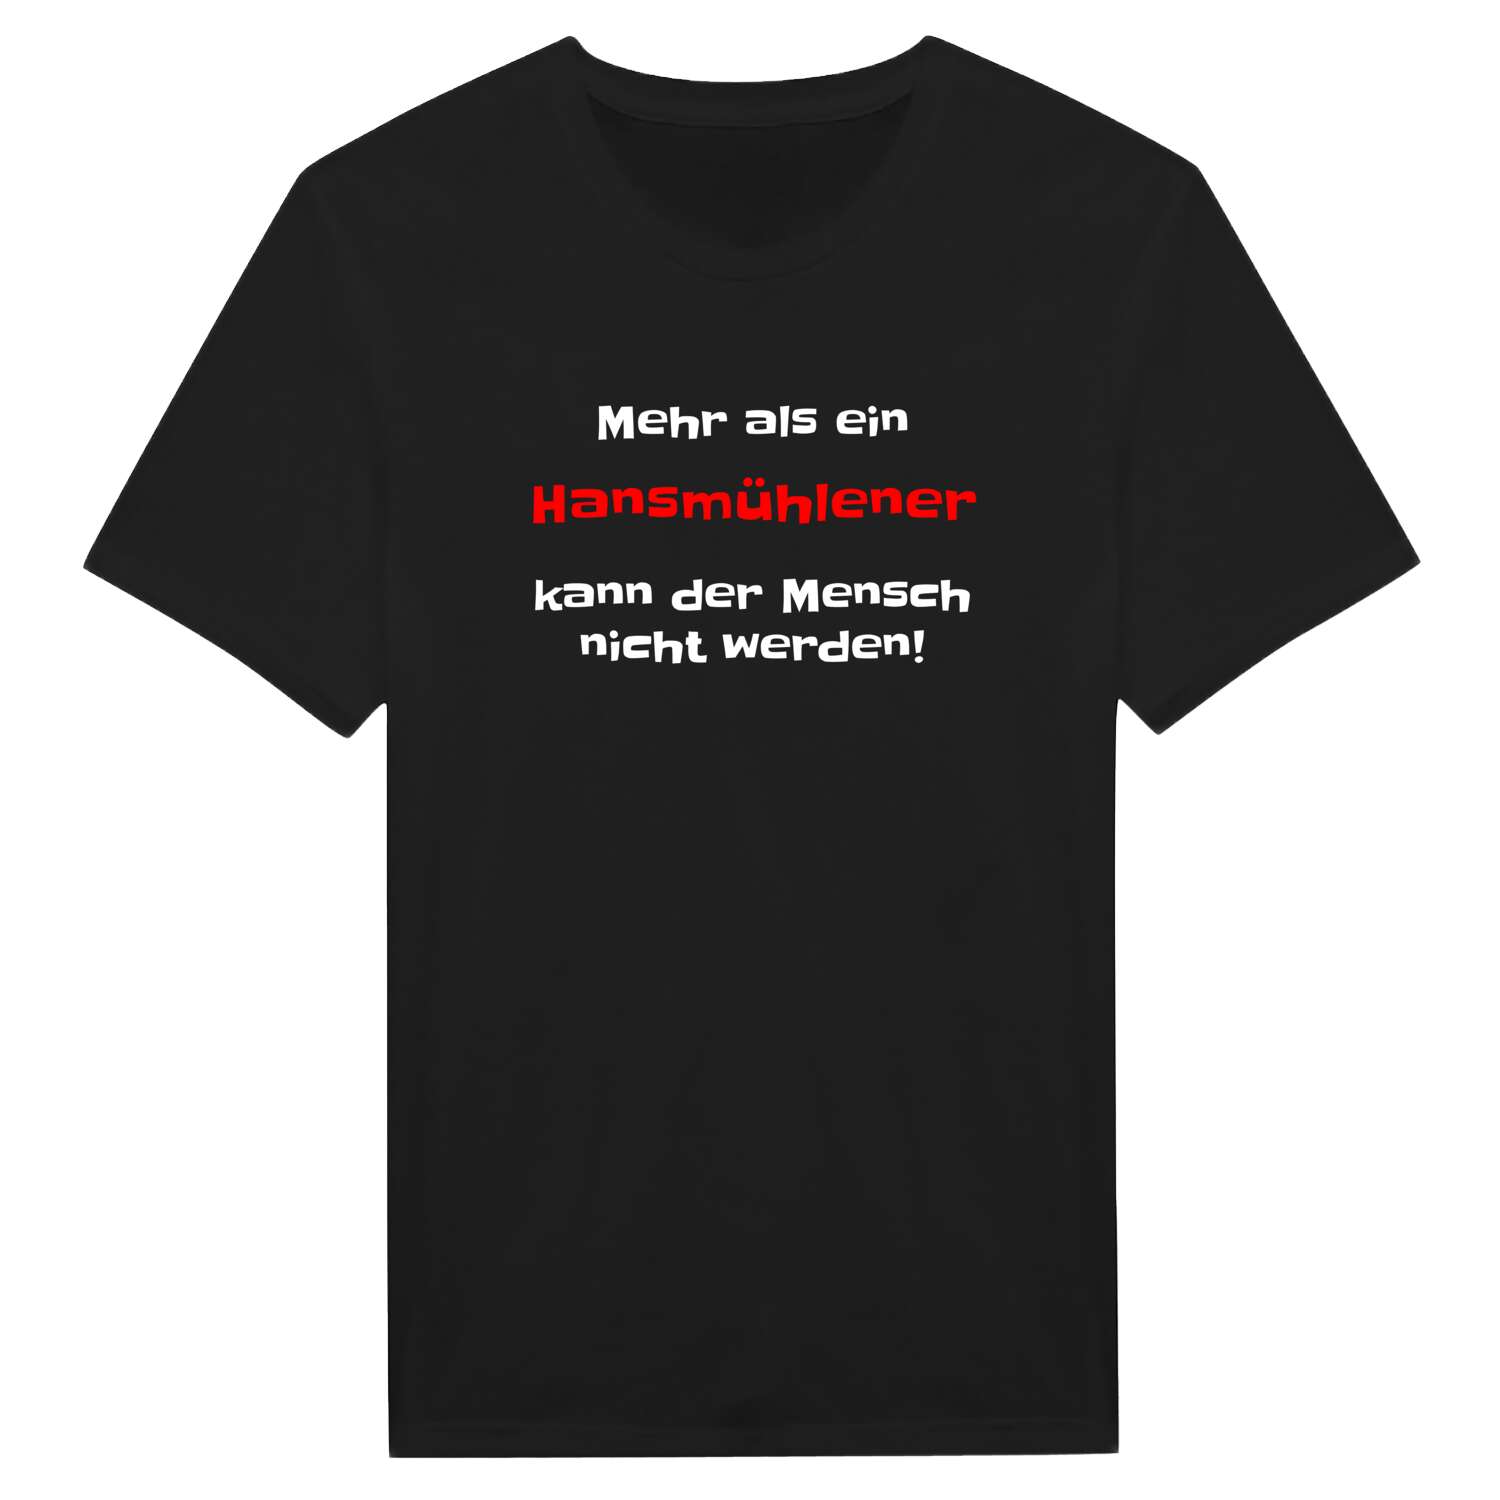 Hansmühle T-Shirt »Mehr als ein«